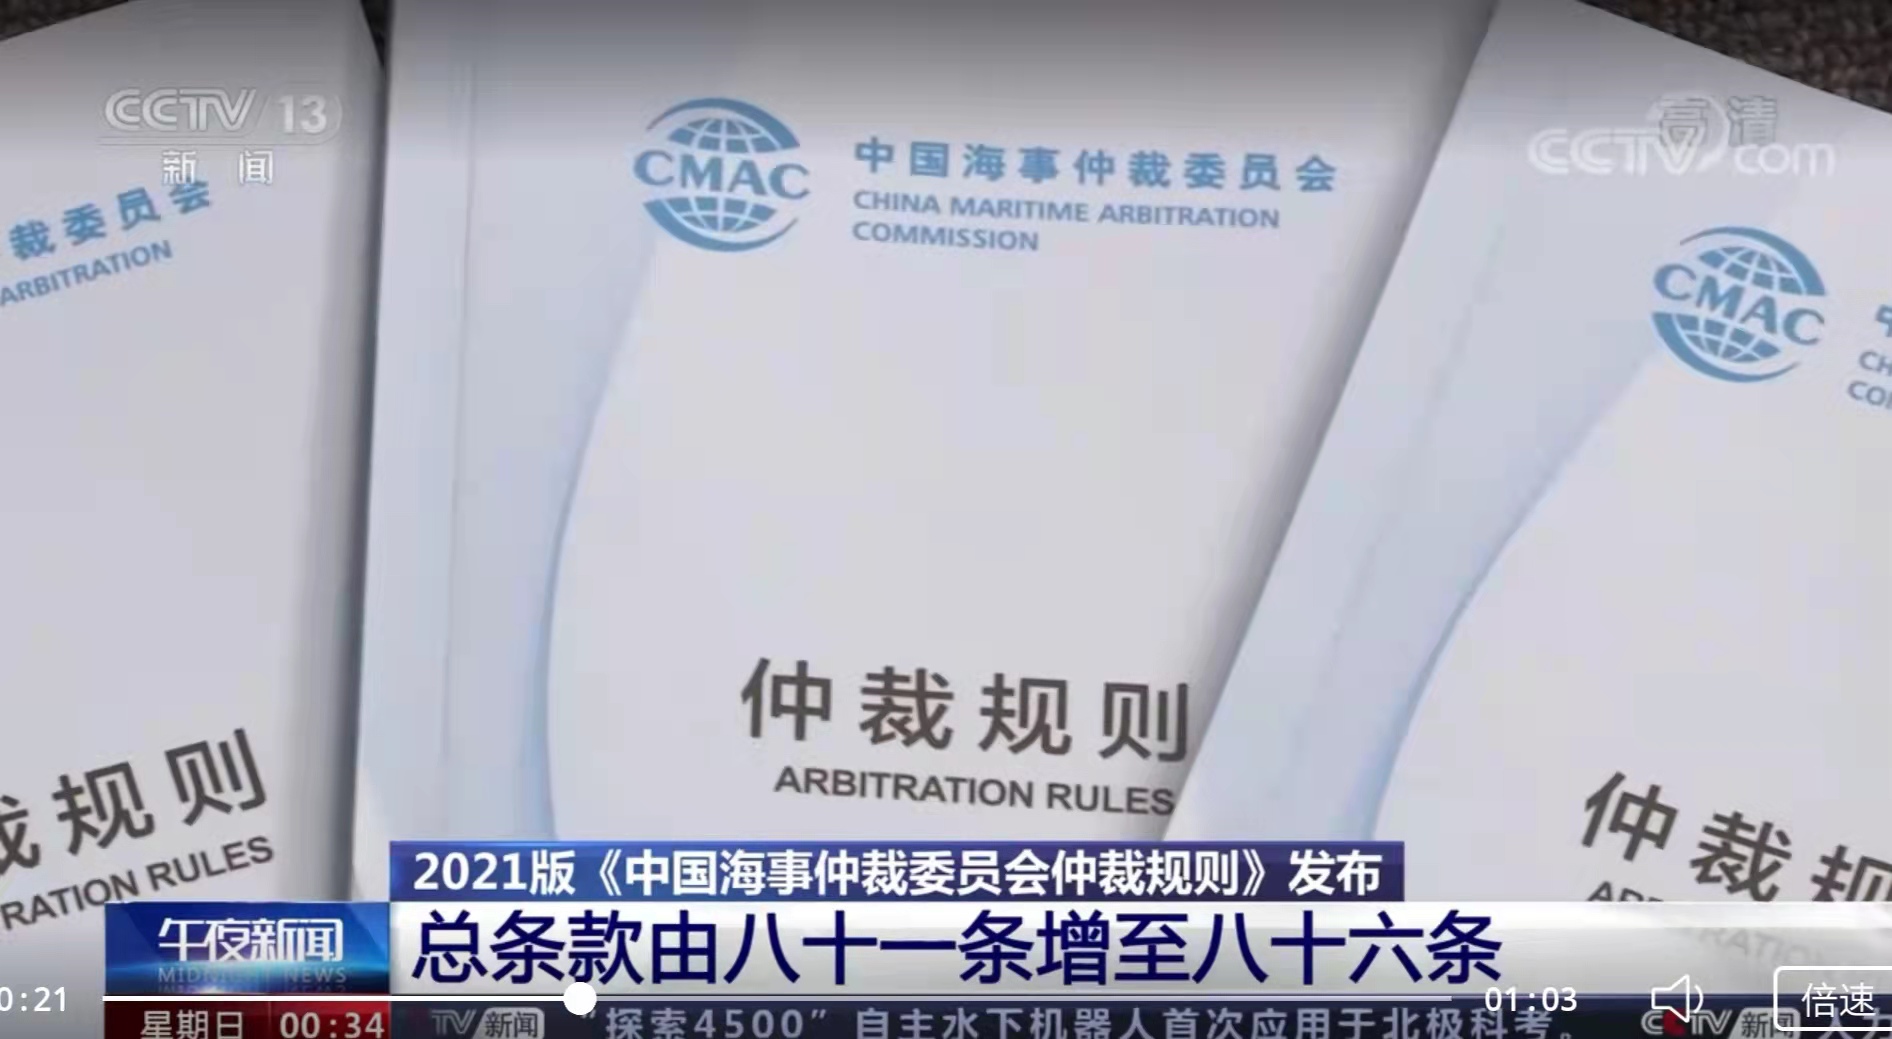 【中央电视台-午夜新闻】2021版《中国海事仲裁委员会仲裁规则》发布